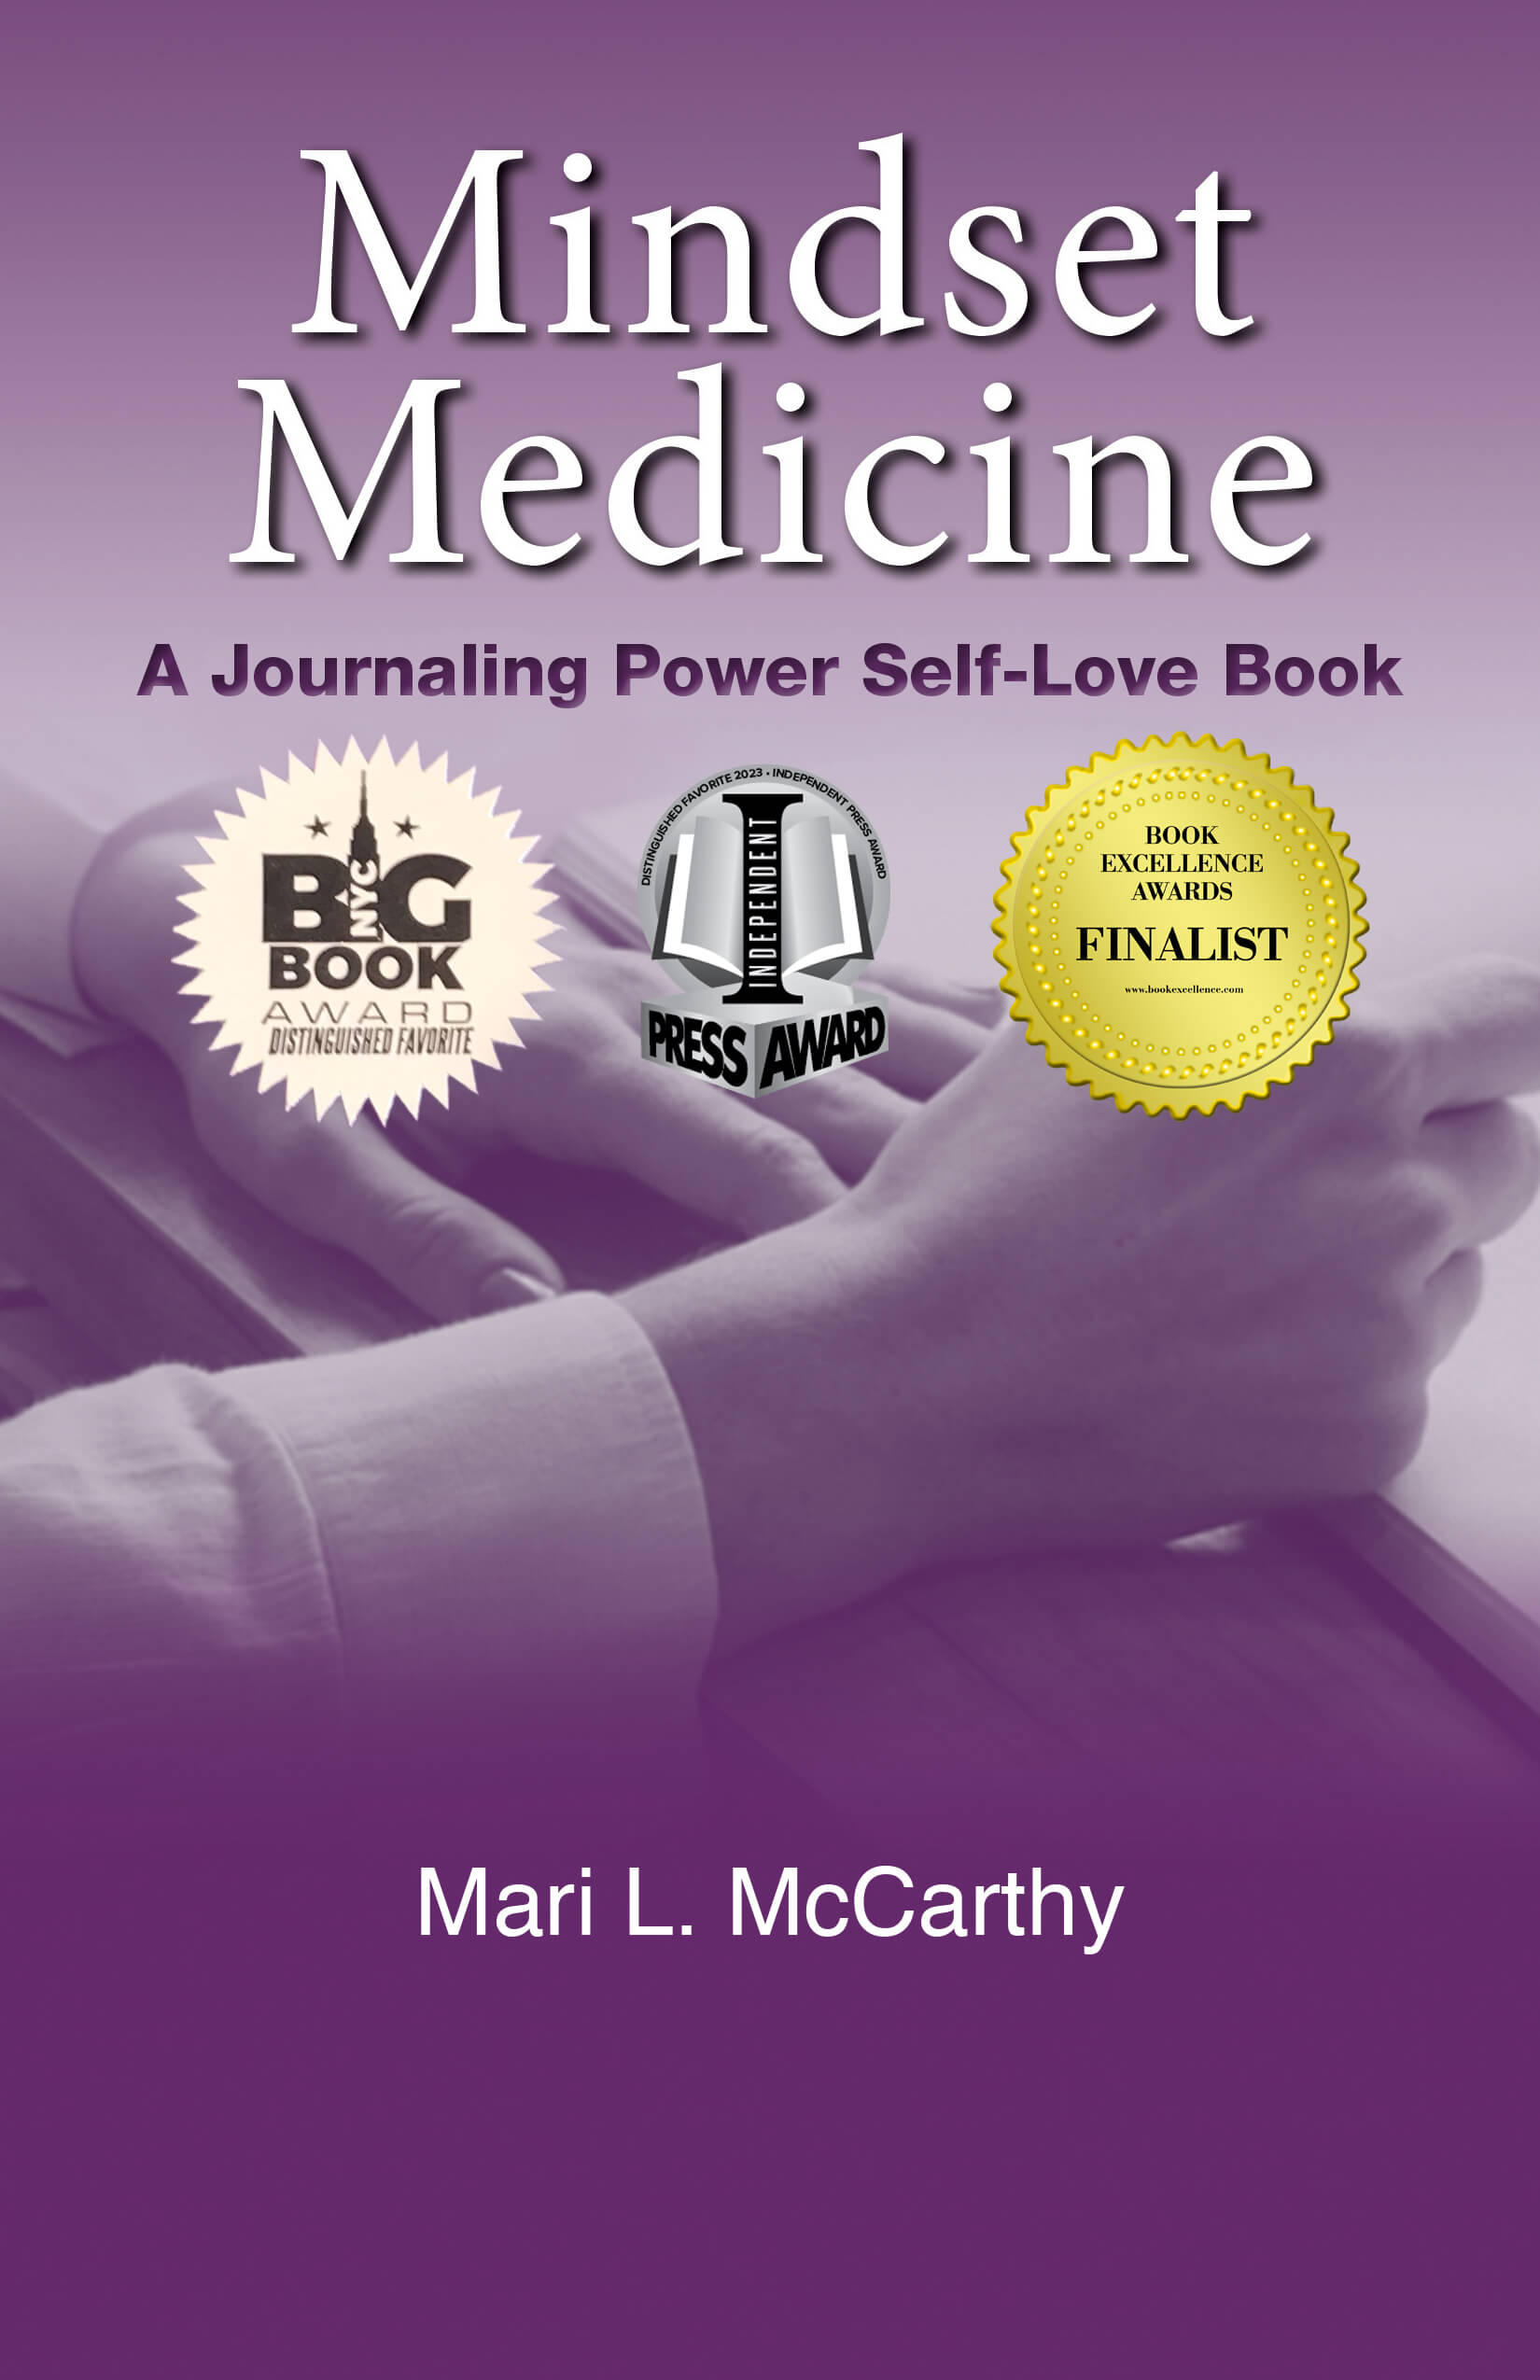 Mindset Medicine Book Cover